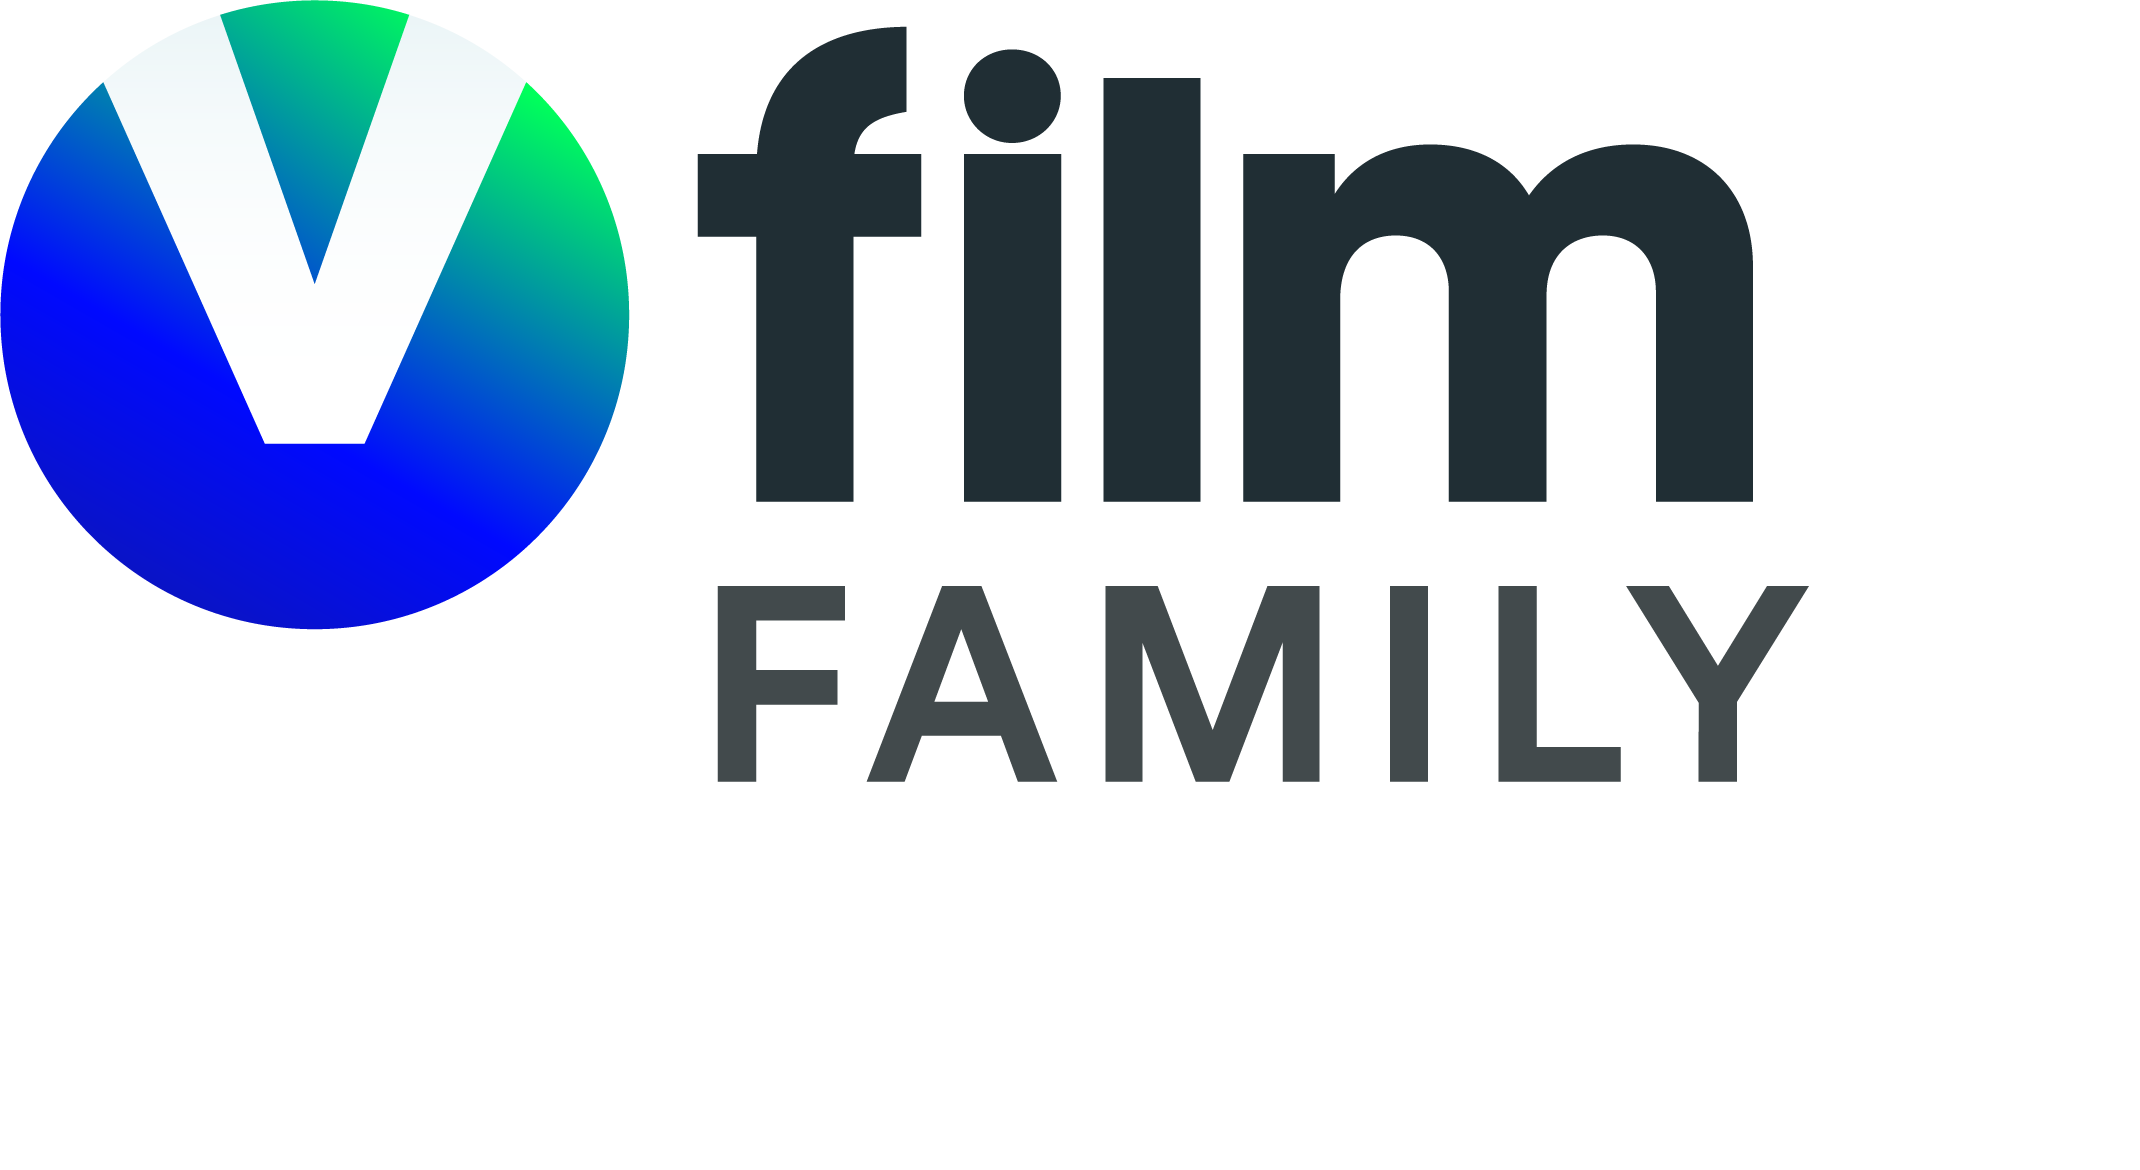 Viasat Film Family Norway